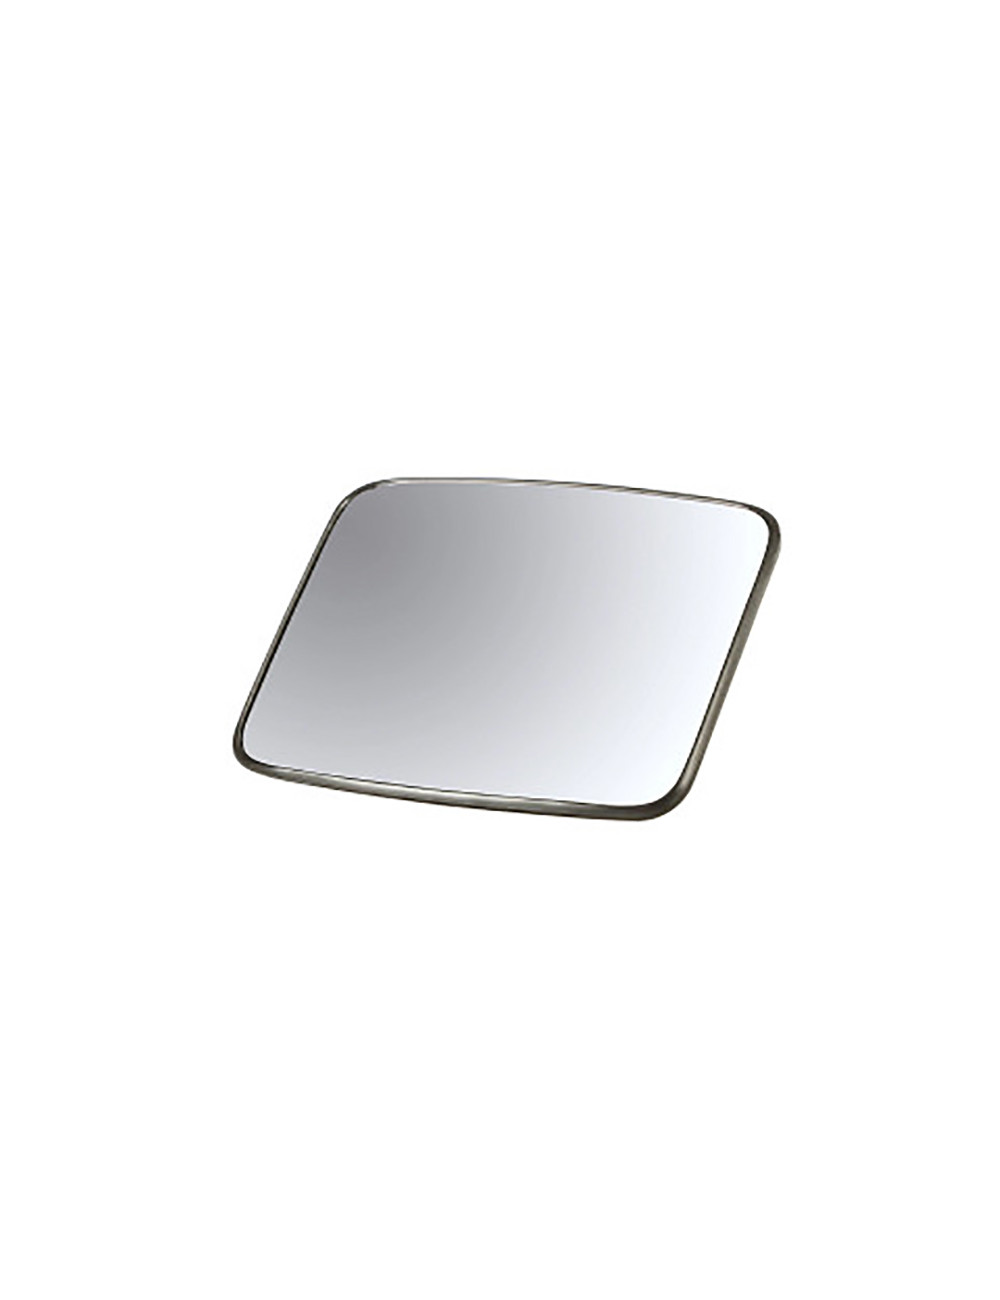 Specchio retrovisore New Holland - cod 5126233